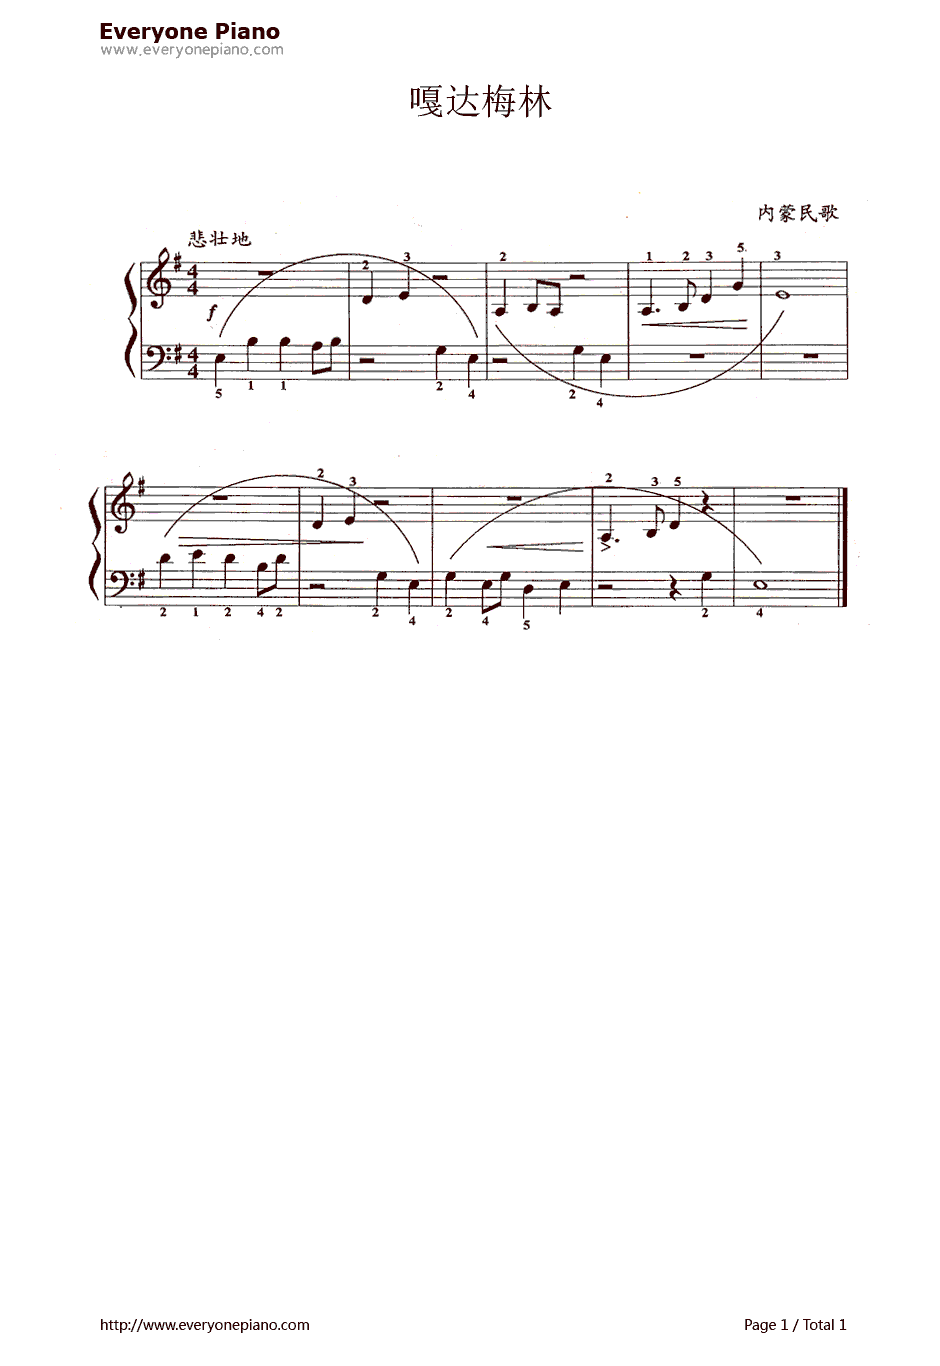 嘎达梅林钢琴谱-辛沪光-蒙古民歌1